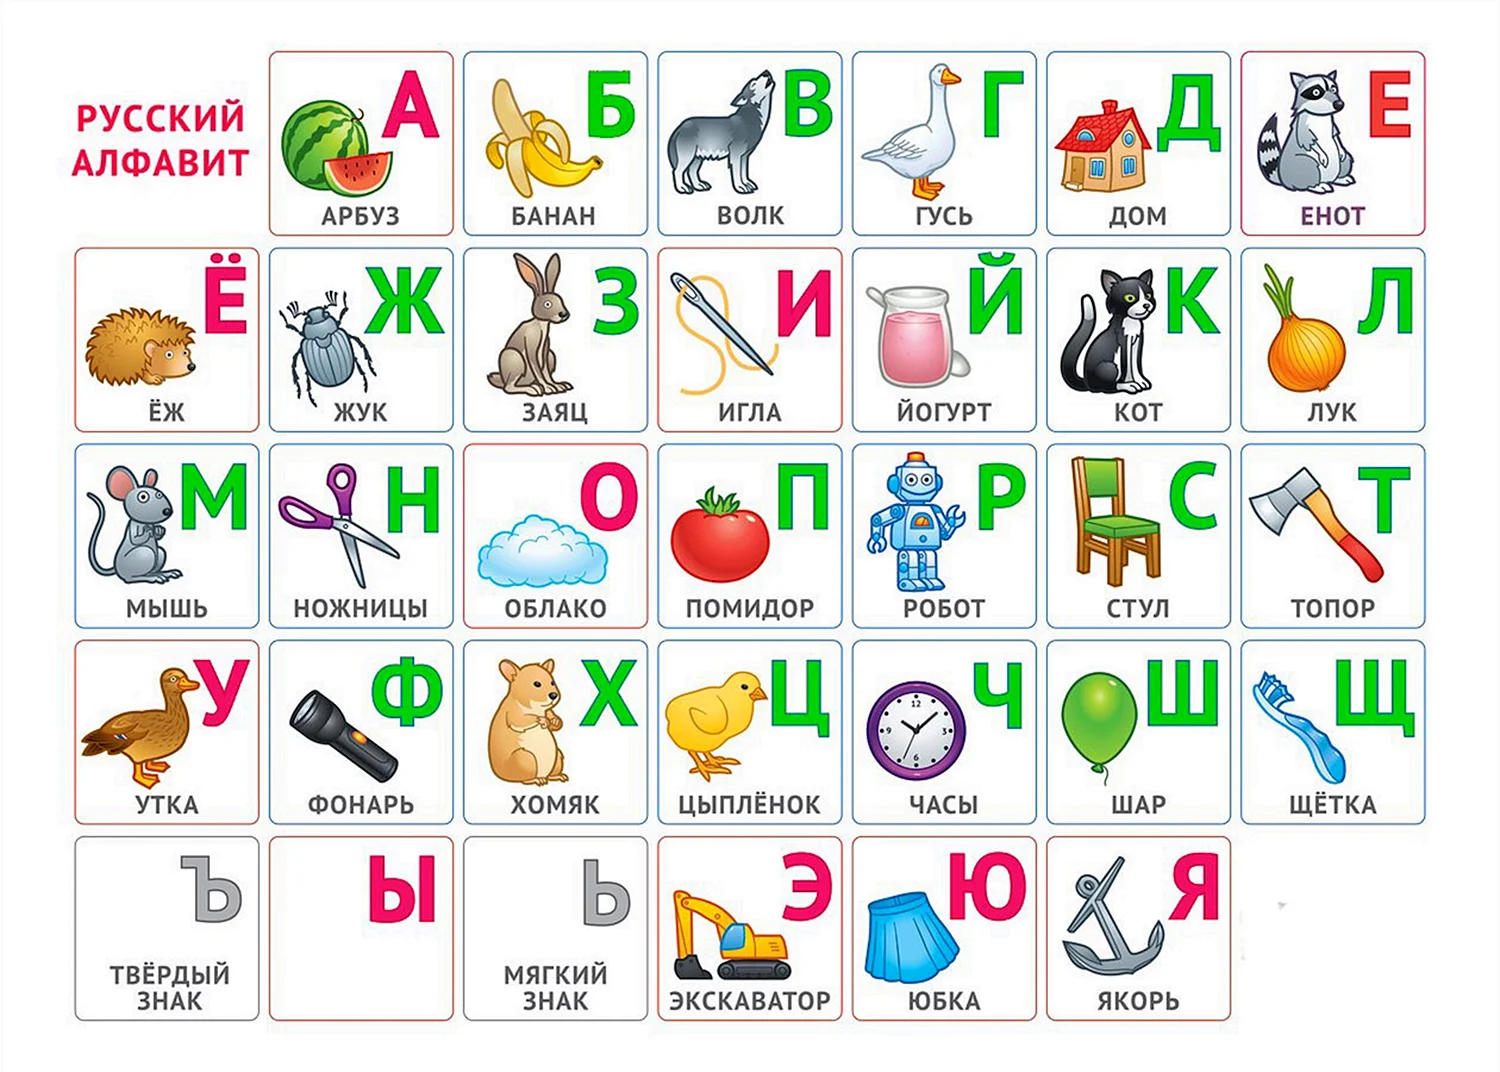 Вспомни алфавит. Азбука для малышей. Русский алфавит. Алфавит для дошкольников. Азбука в картинках.